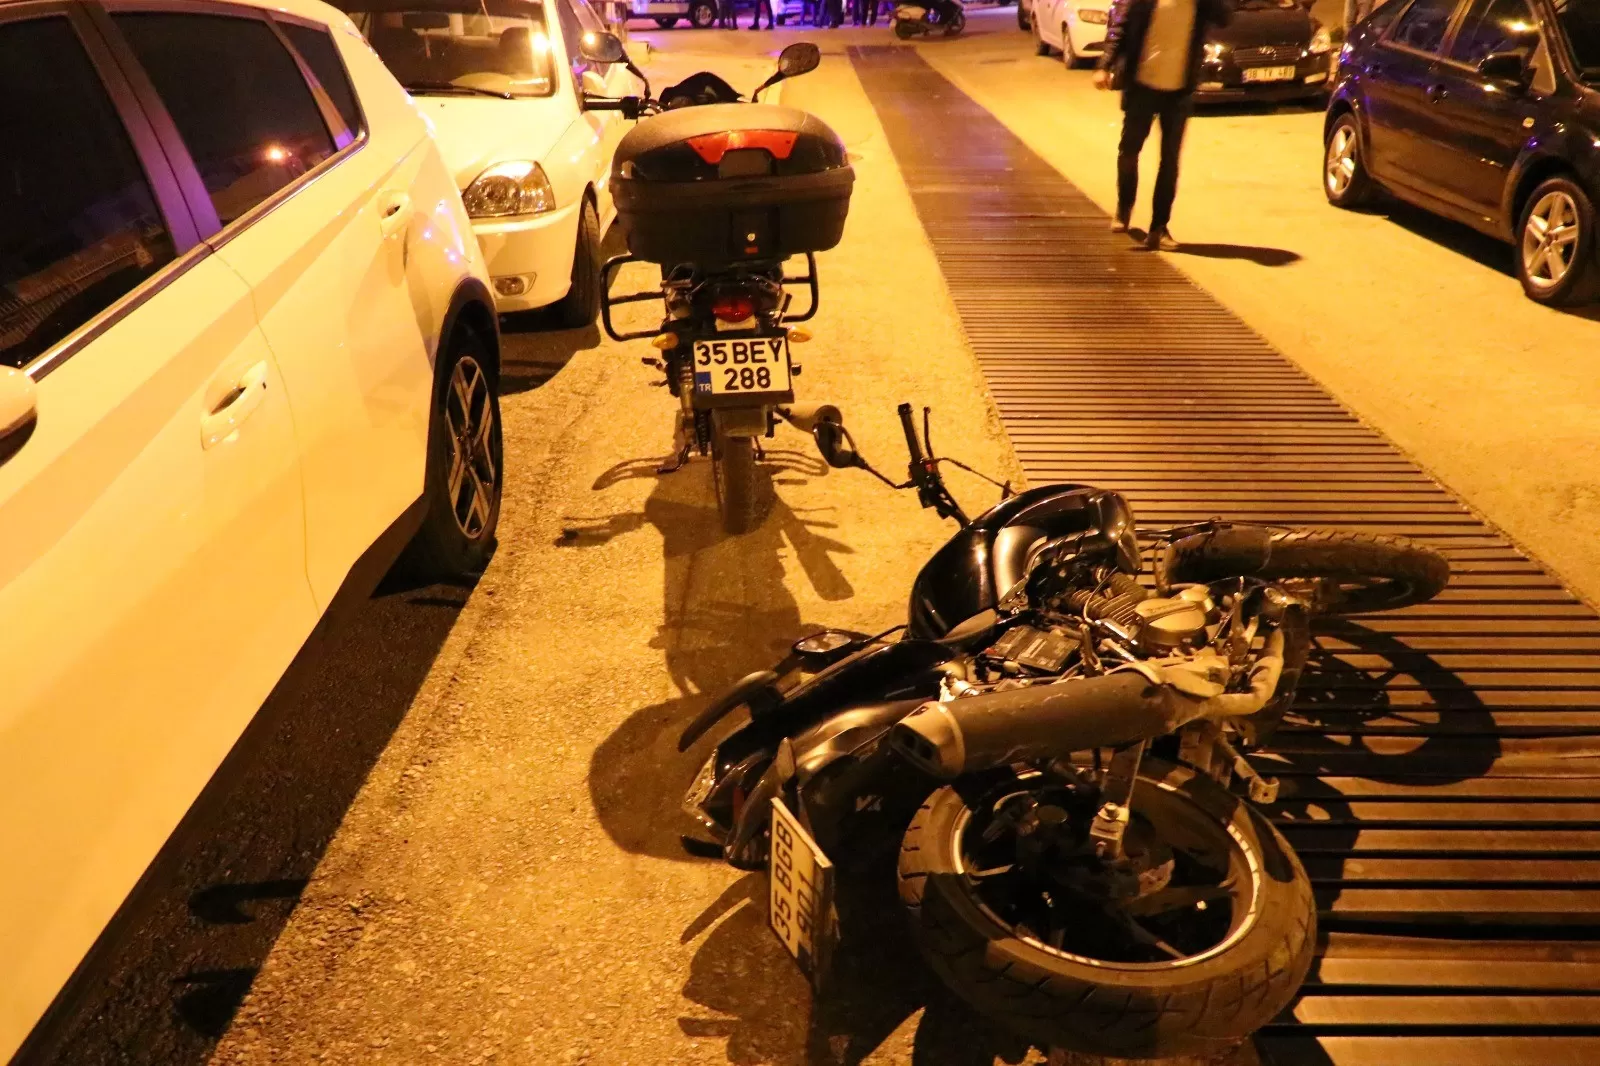 İzmir'in Buca ilçesinde Hürriyet Mahallesi'nde gerçekleşen olayda, otomobille motosiklet çalmaya çalışan hırsızlarla motosiklet sahipleri arasında çıkan çatışma sonucunda trajik bir olay yaşandı.